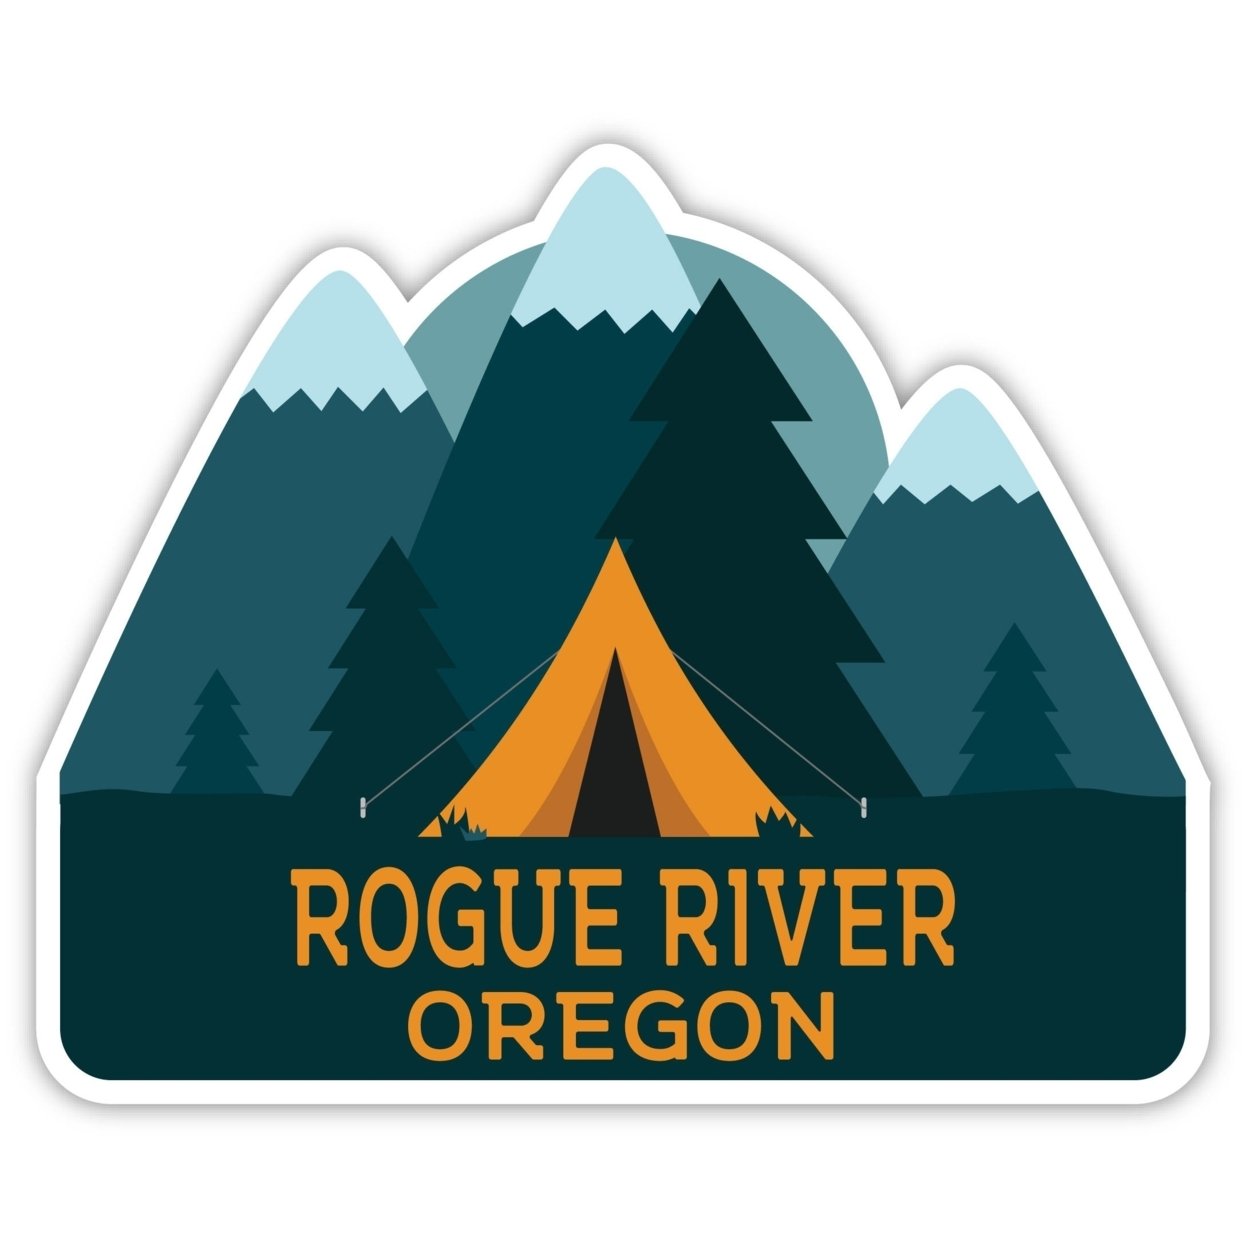 Rogue River Oregon Souvenir Decorative Stickers (Choose Theme And Size) - Single Unit, 2-Inch, Tent